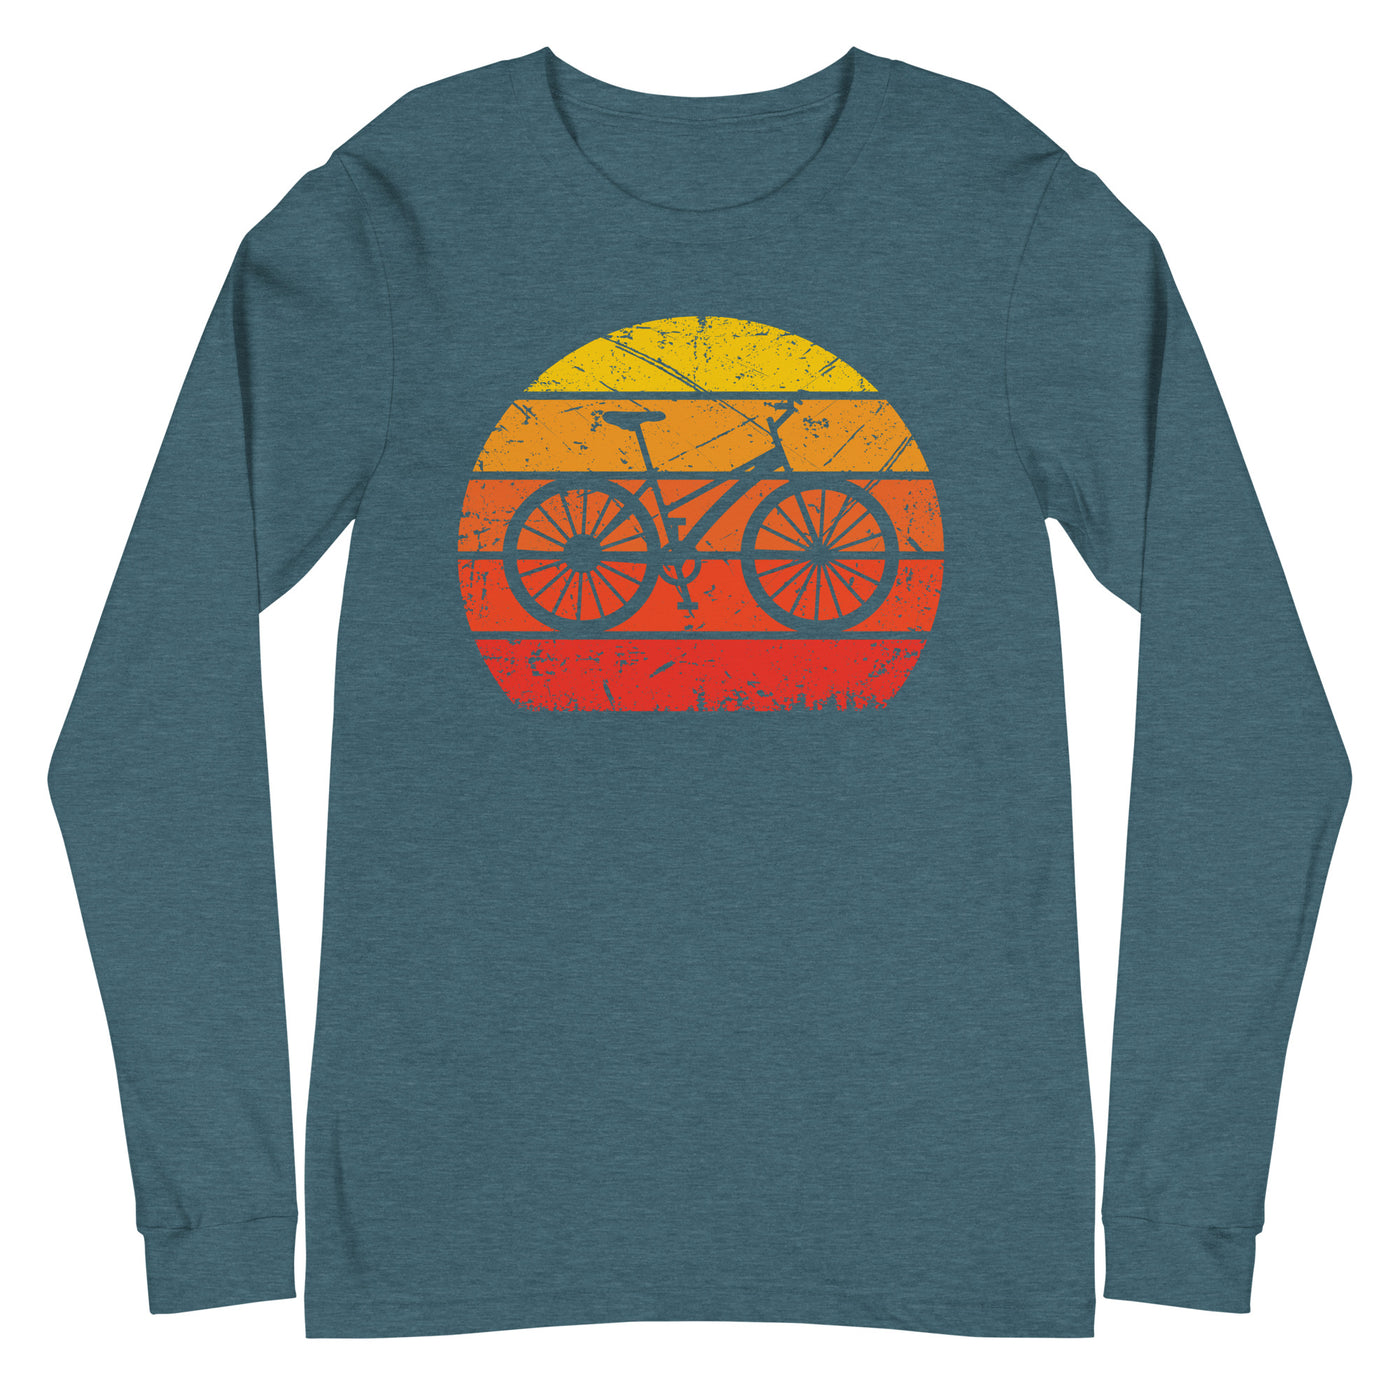 Vintage Sun and Cycling - Longsleeve (Unisex) fahrrad Heather Deep Teal